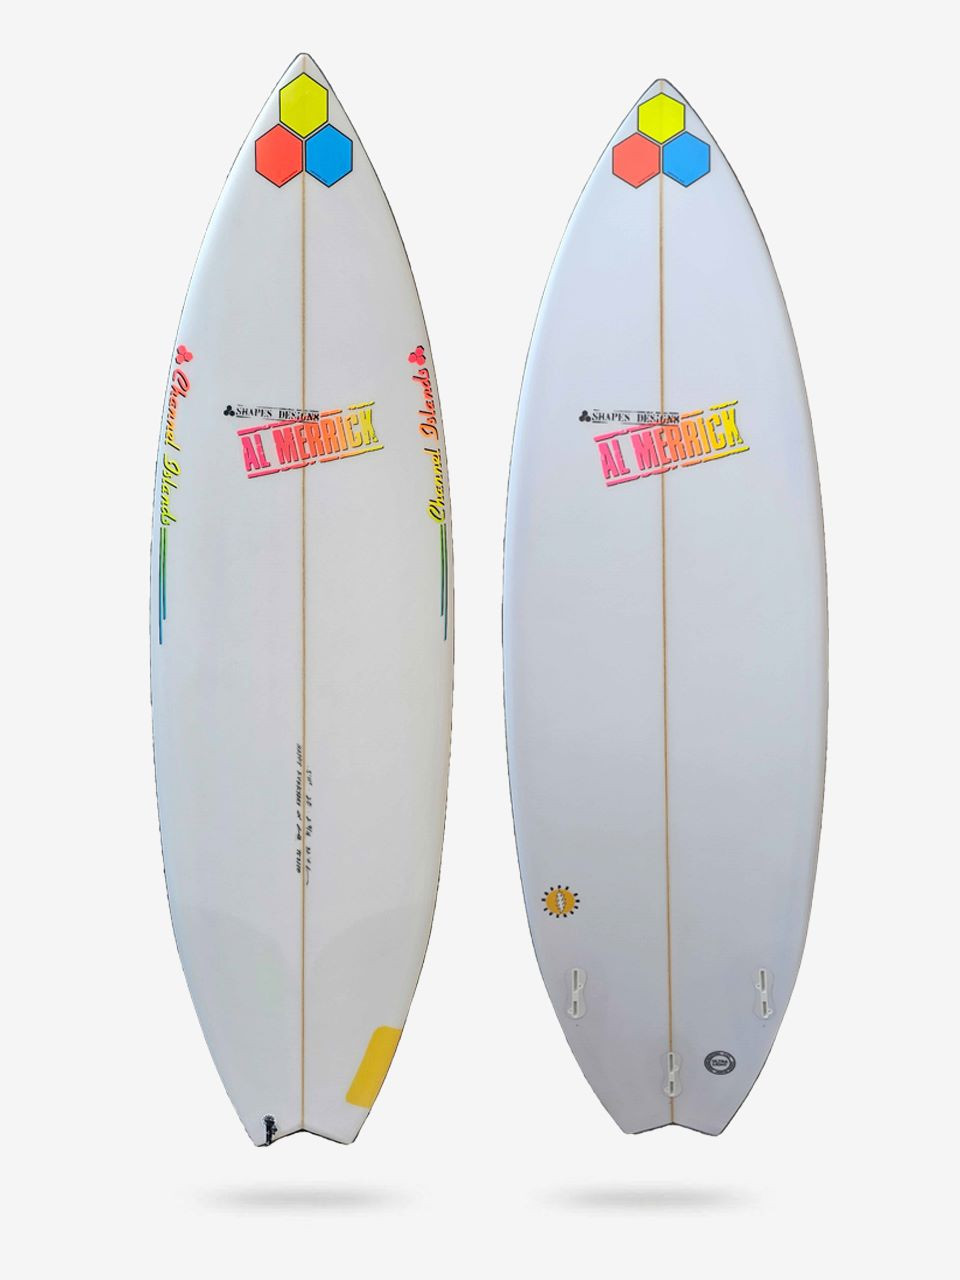 Channel Islands surfboard model list